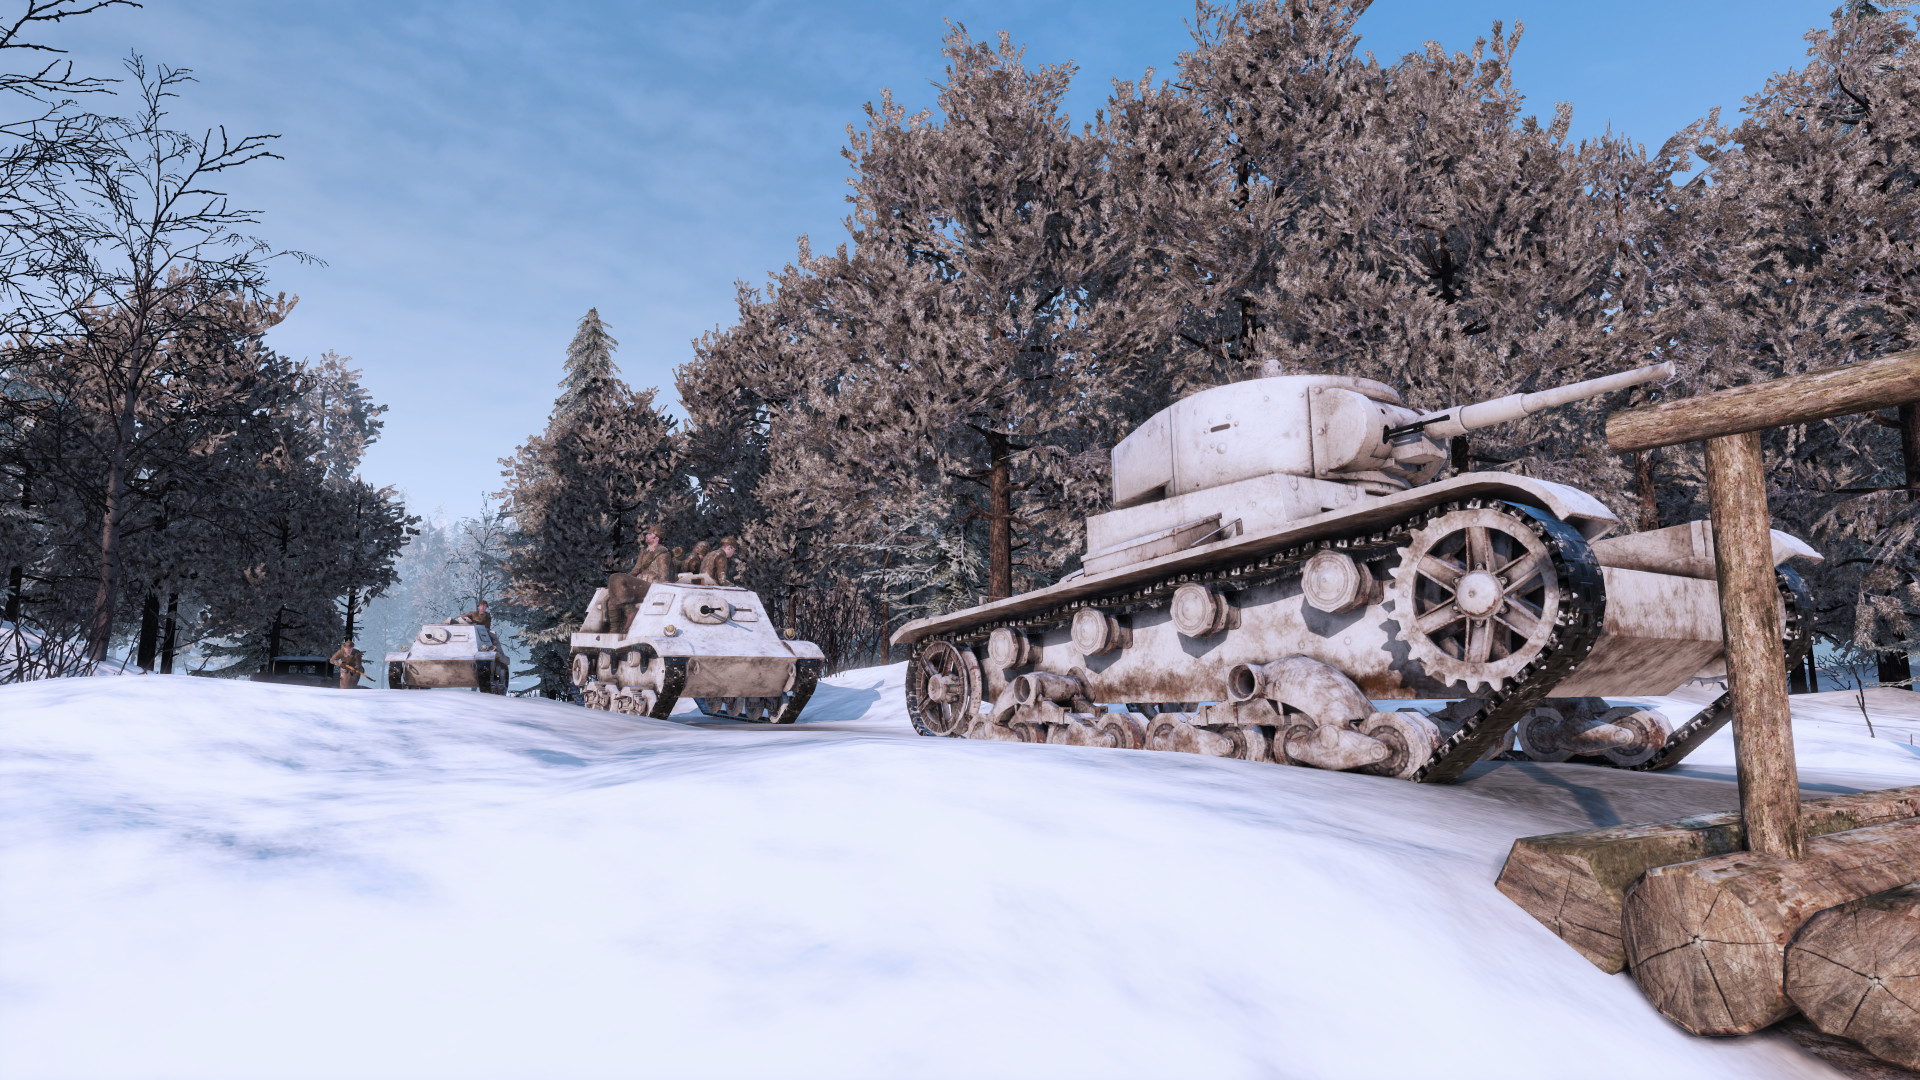 Talvisota - Winter War screenshot